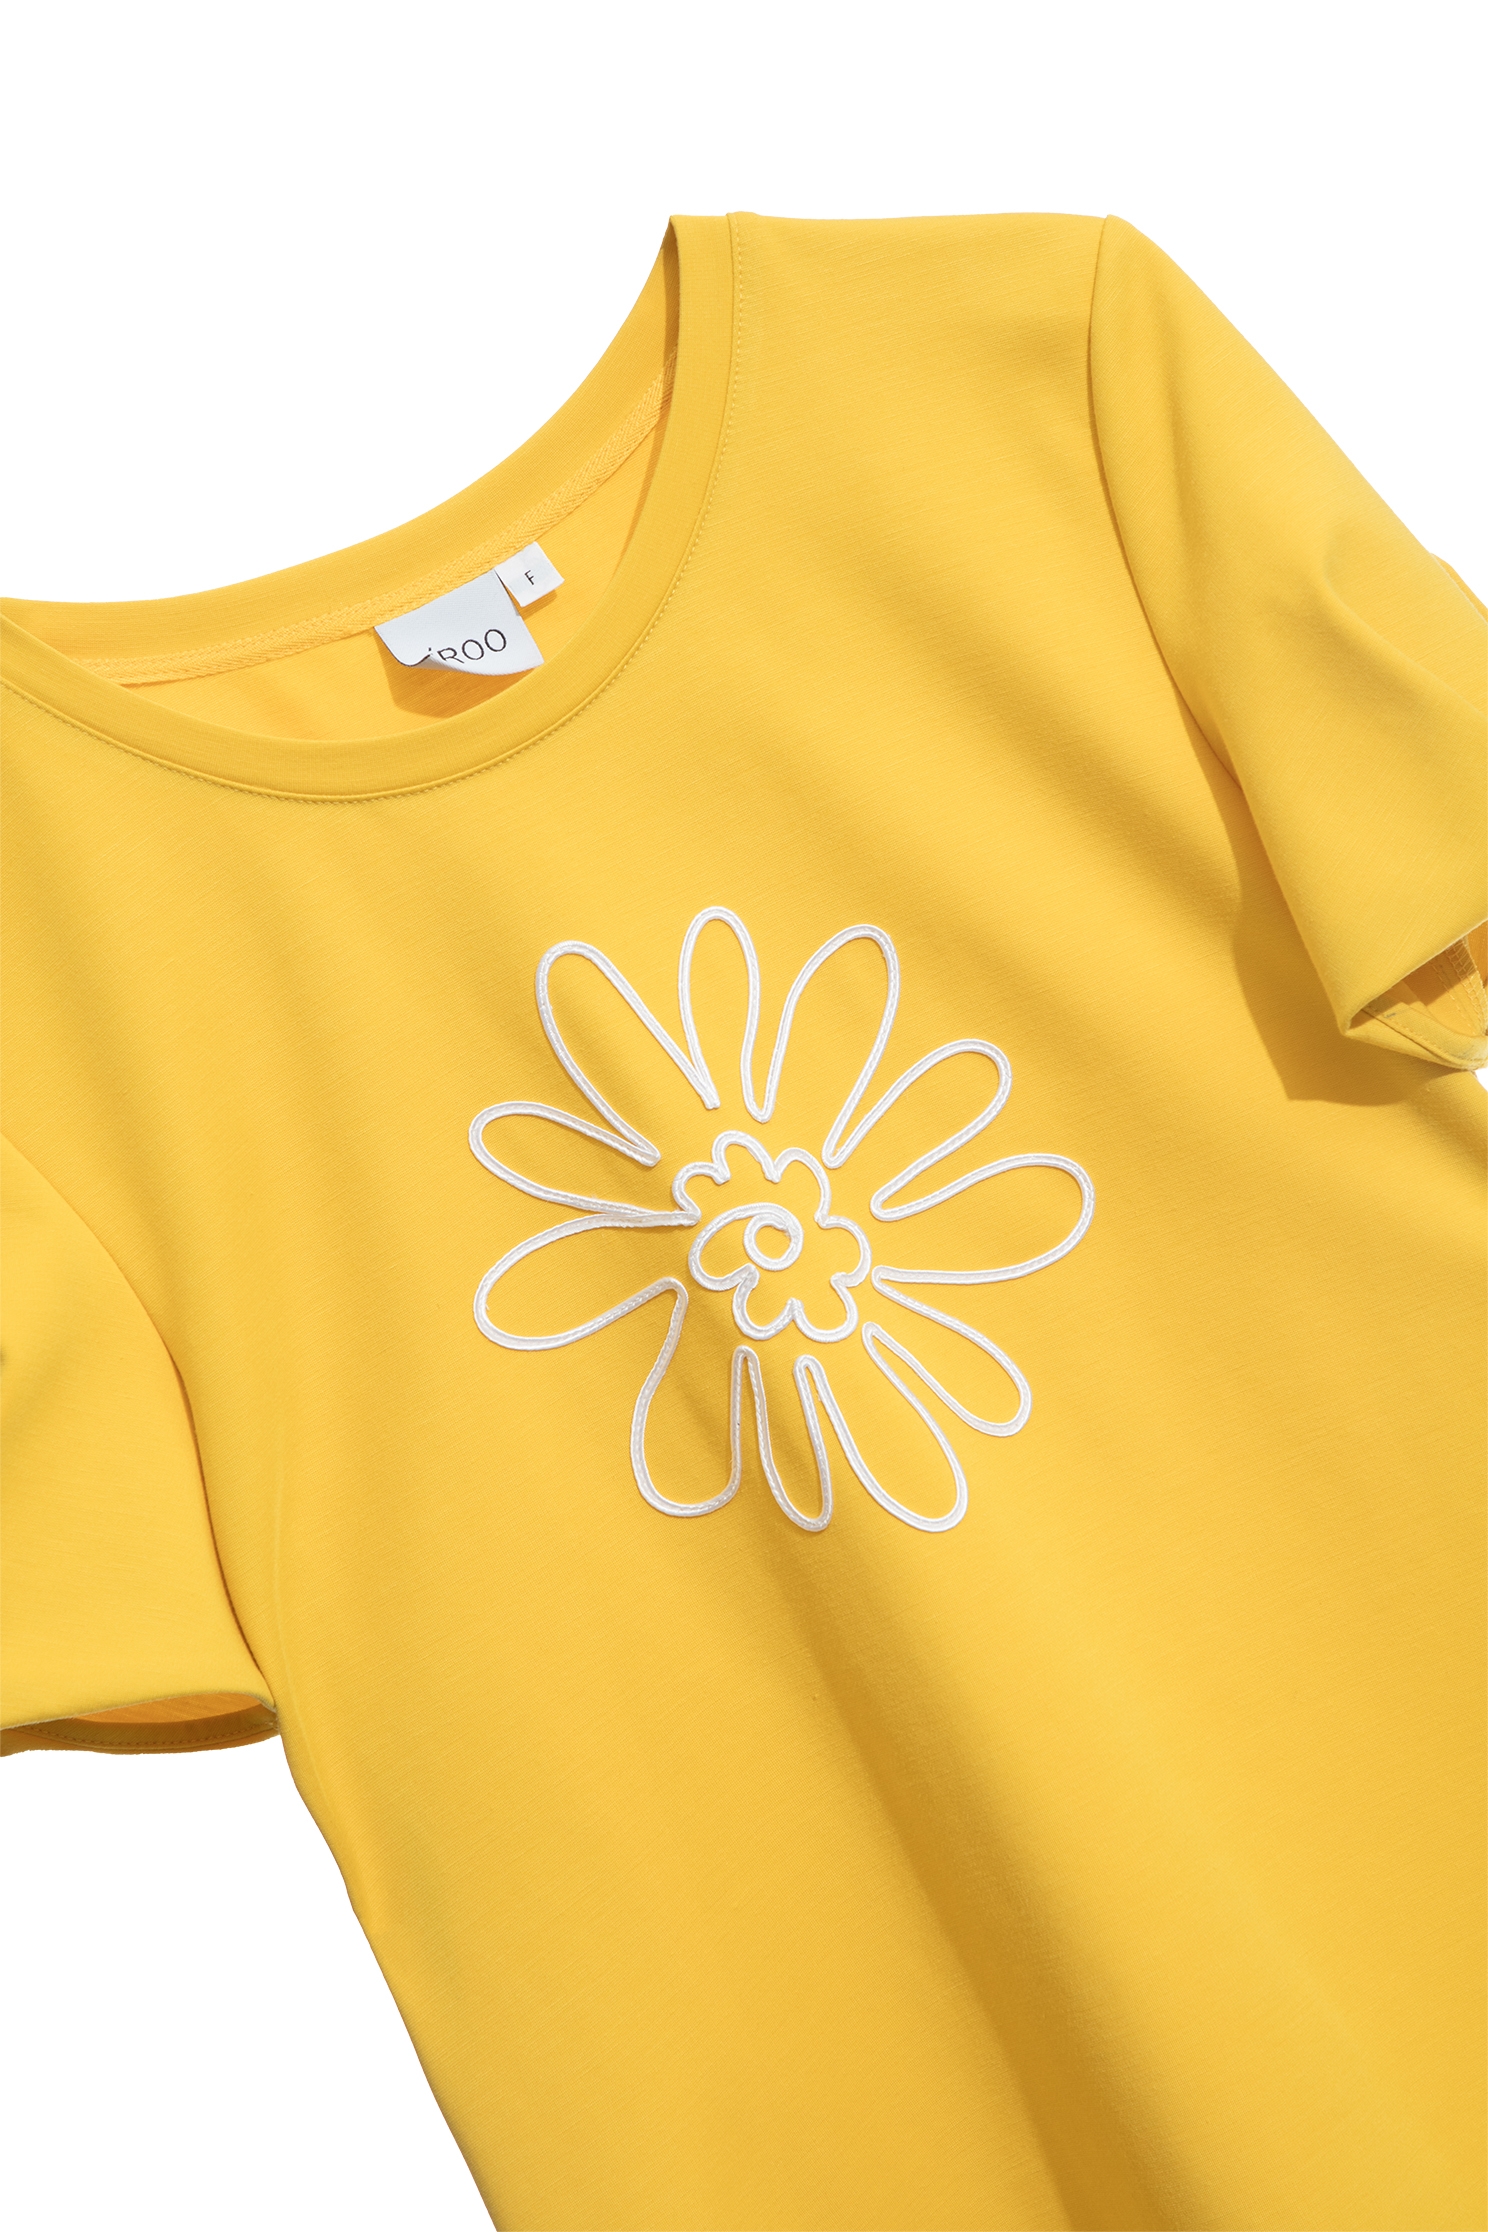 花粉黃單品上衣花粉黃單品上衣,T-Shirt,上衣,人氣商品,派對特輯,秋冬穿搭